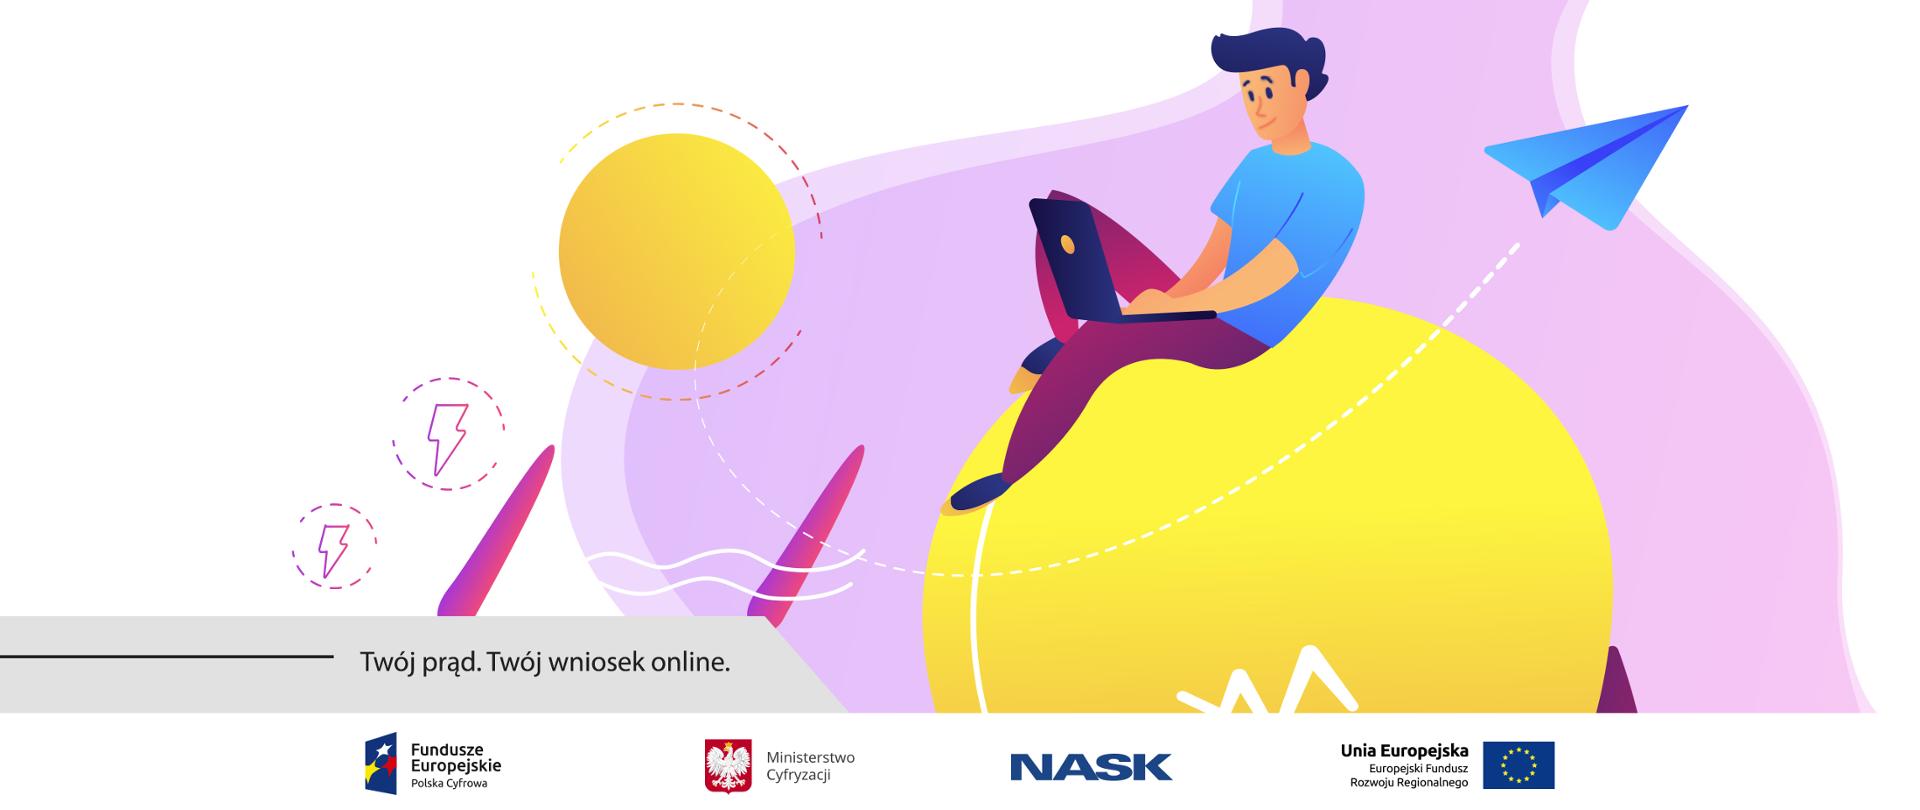 Grafika. Mężczyzna siedzi na żółtej kuli i pracuje na laptopie. Obok napis: Twój prąd. Twój wniosek online.